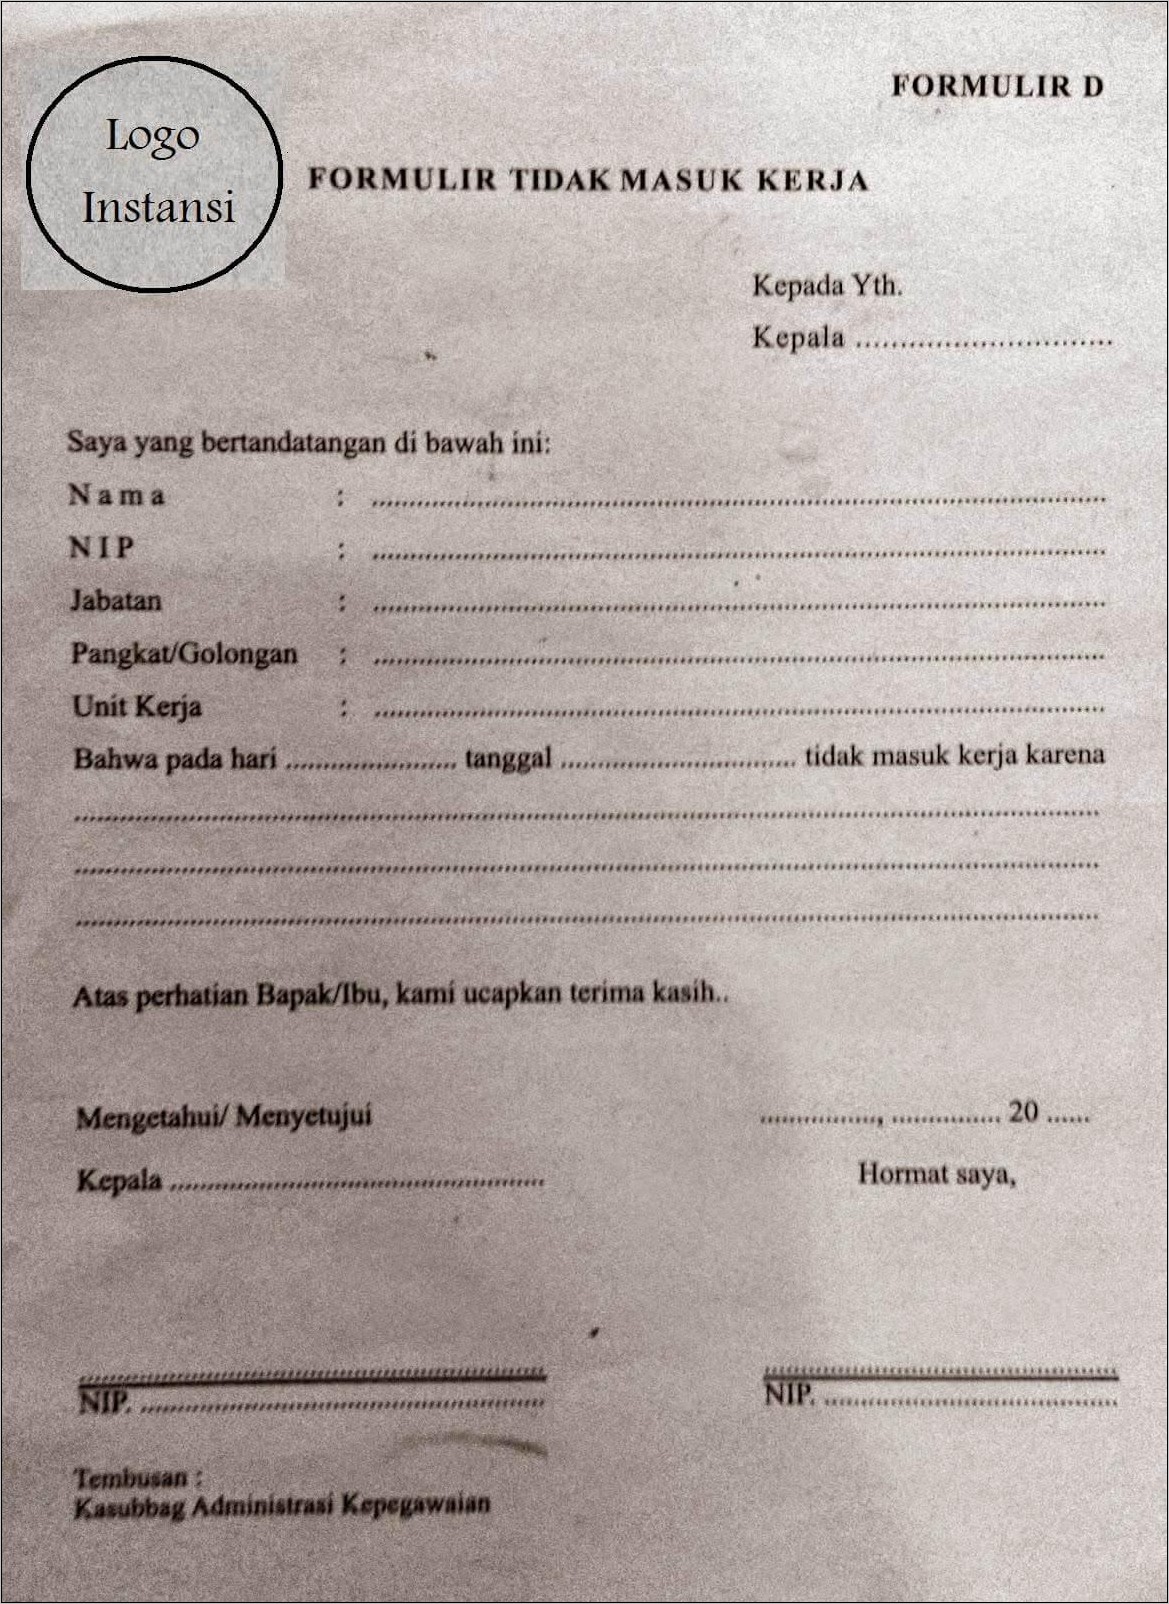 Contoh Surat Permohonan Izin Tidak Masuk Kerja Ketua Pengadilan Negeri